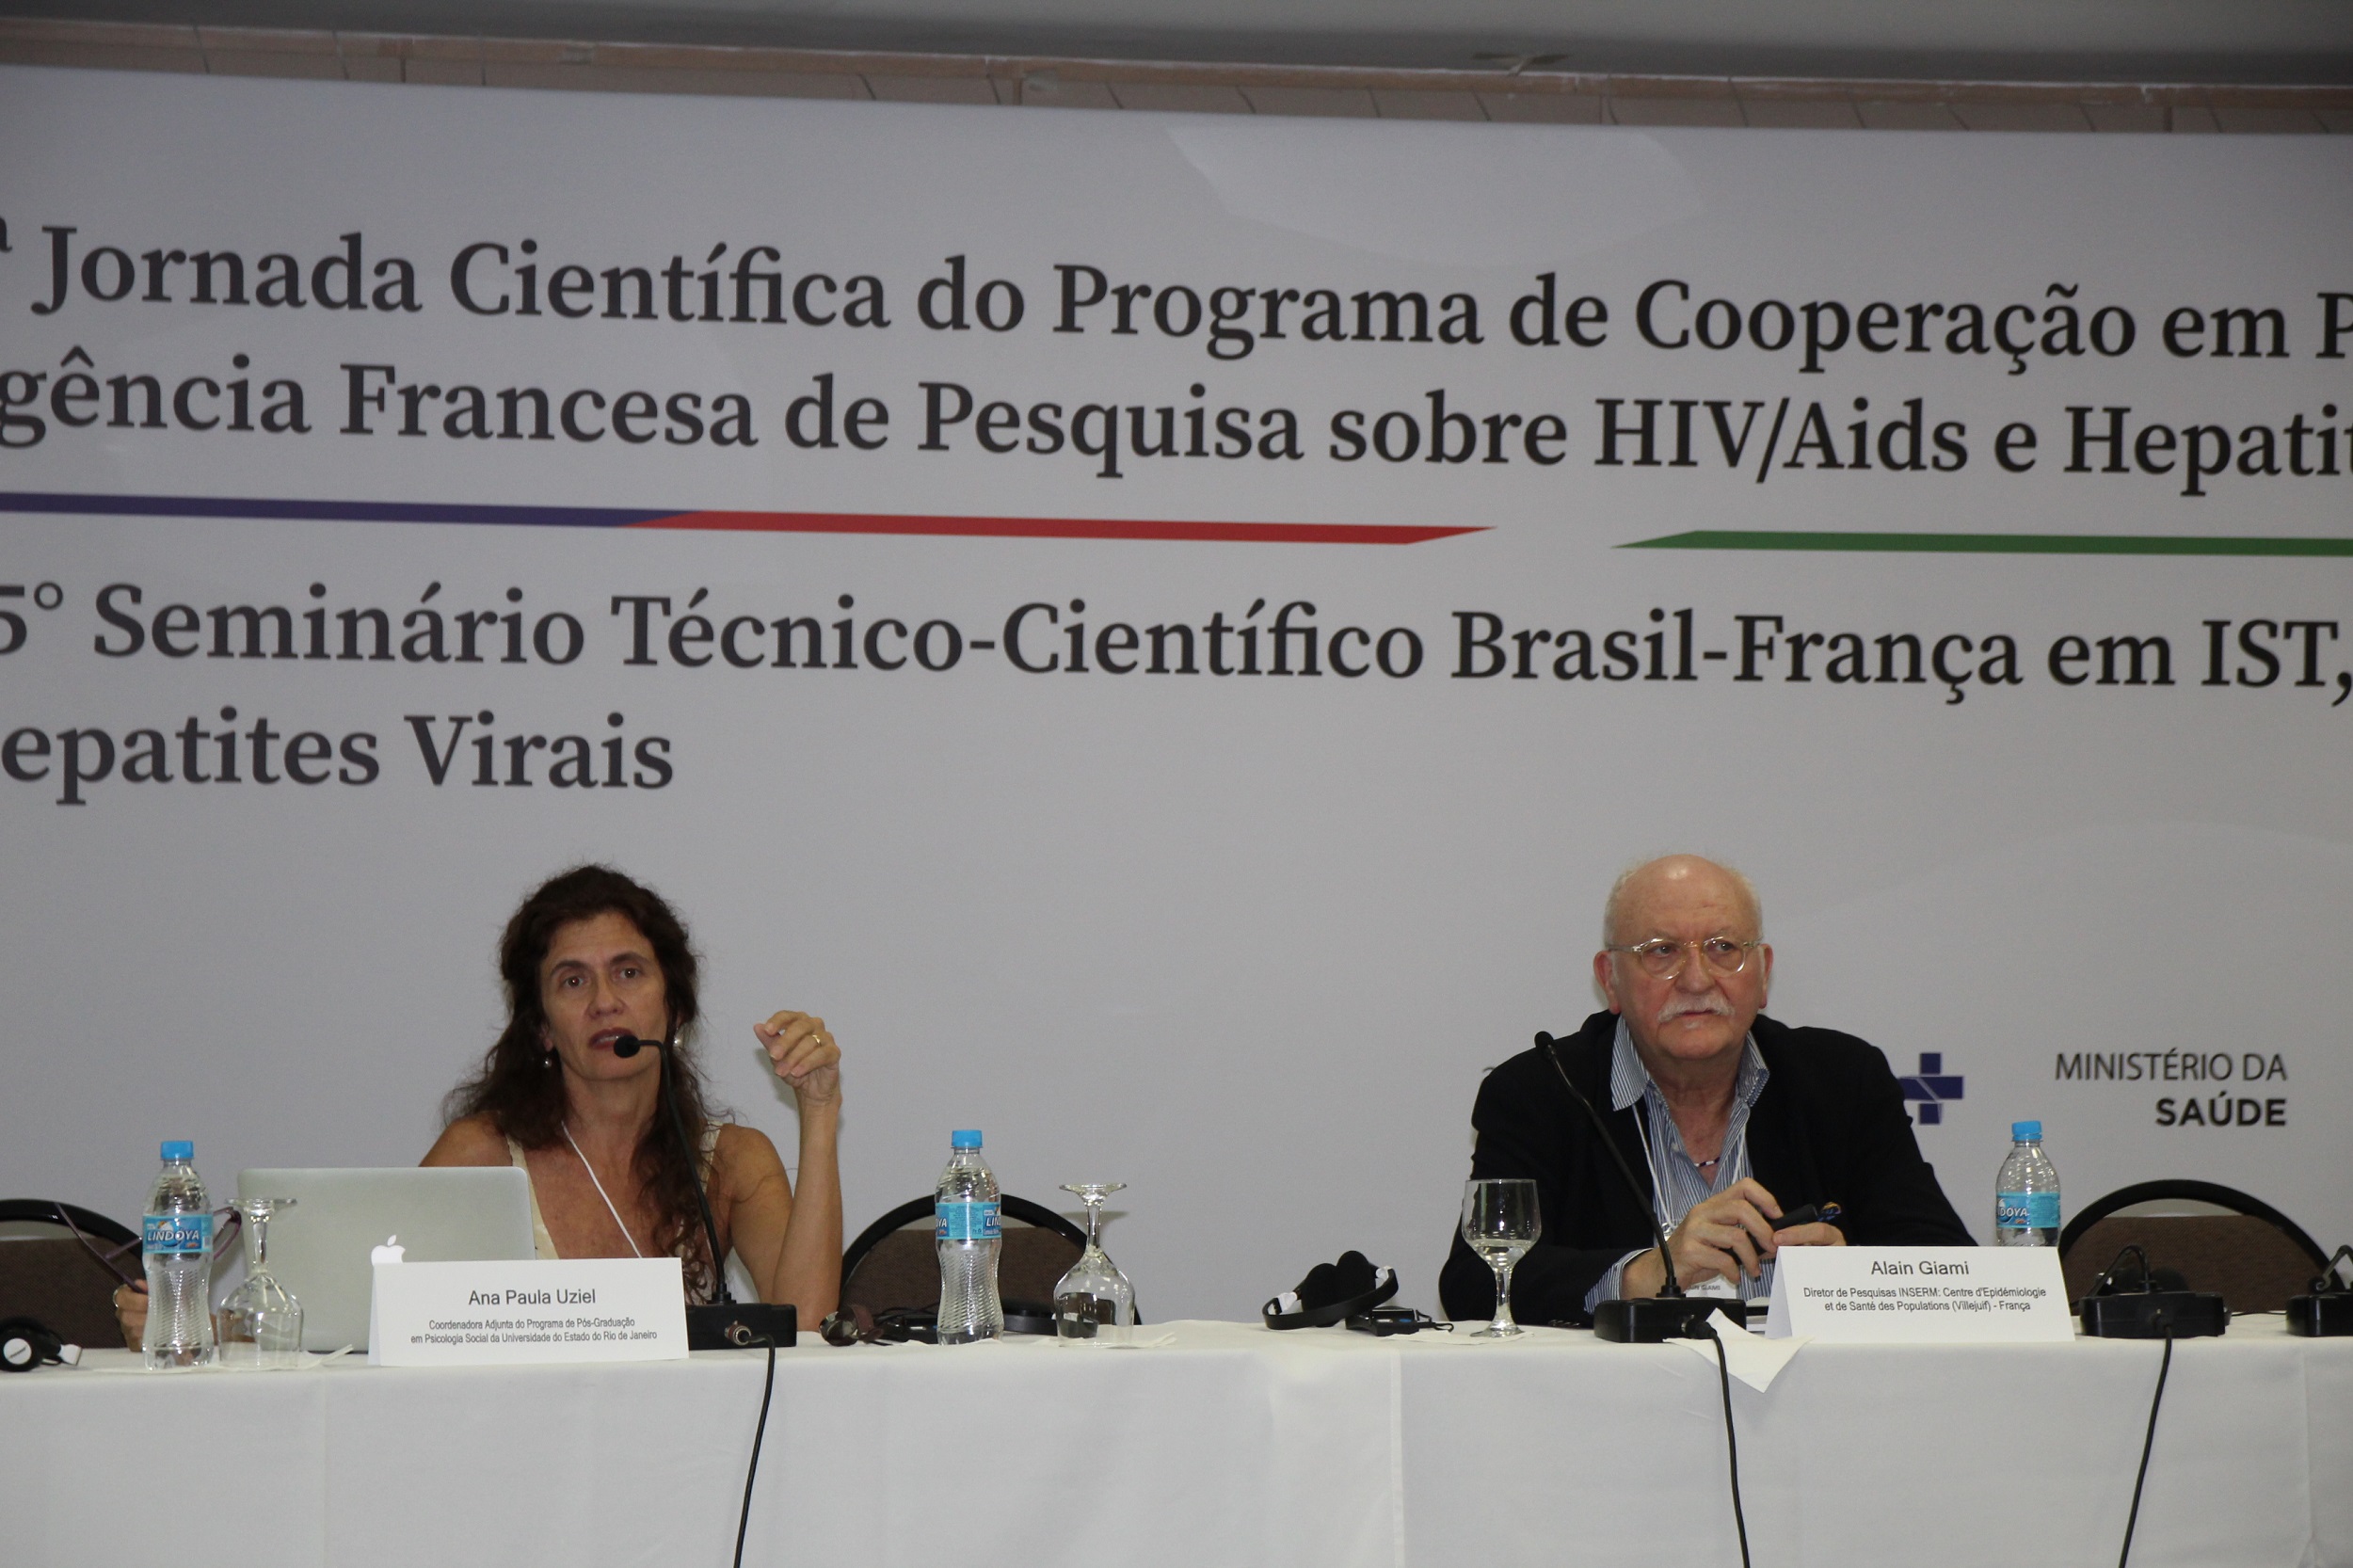 6ª Jornada Científica do Programa de Cooperação em pesquisa sobre HIV, Aids e Hepatites Virais